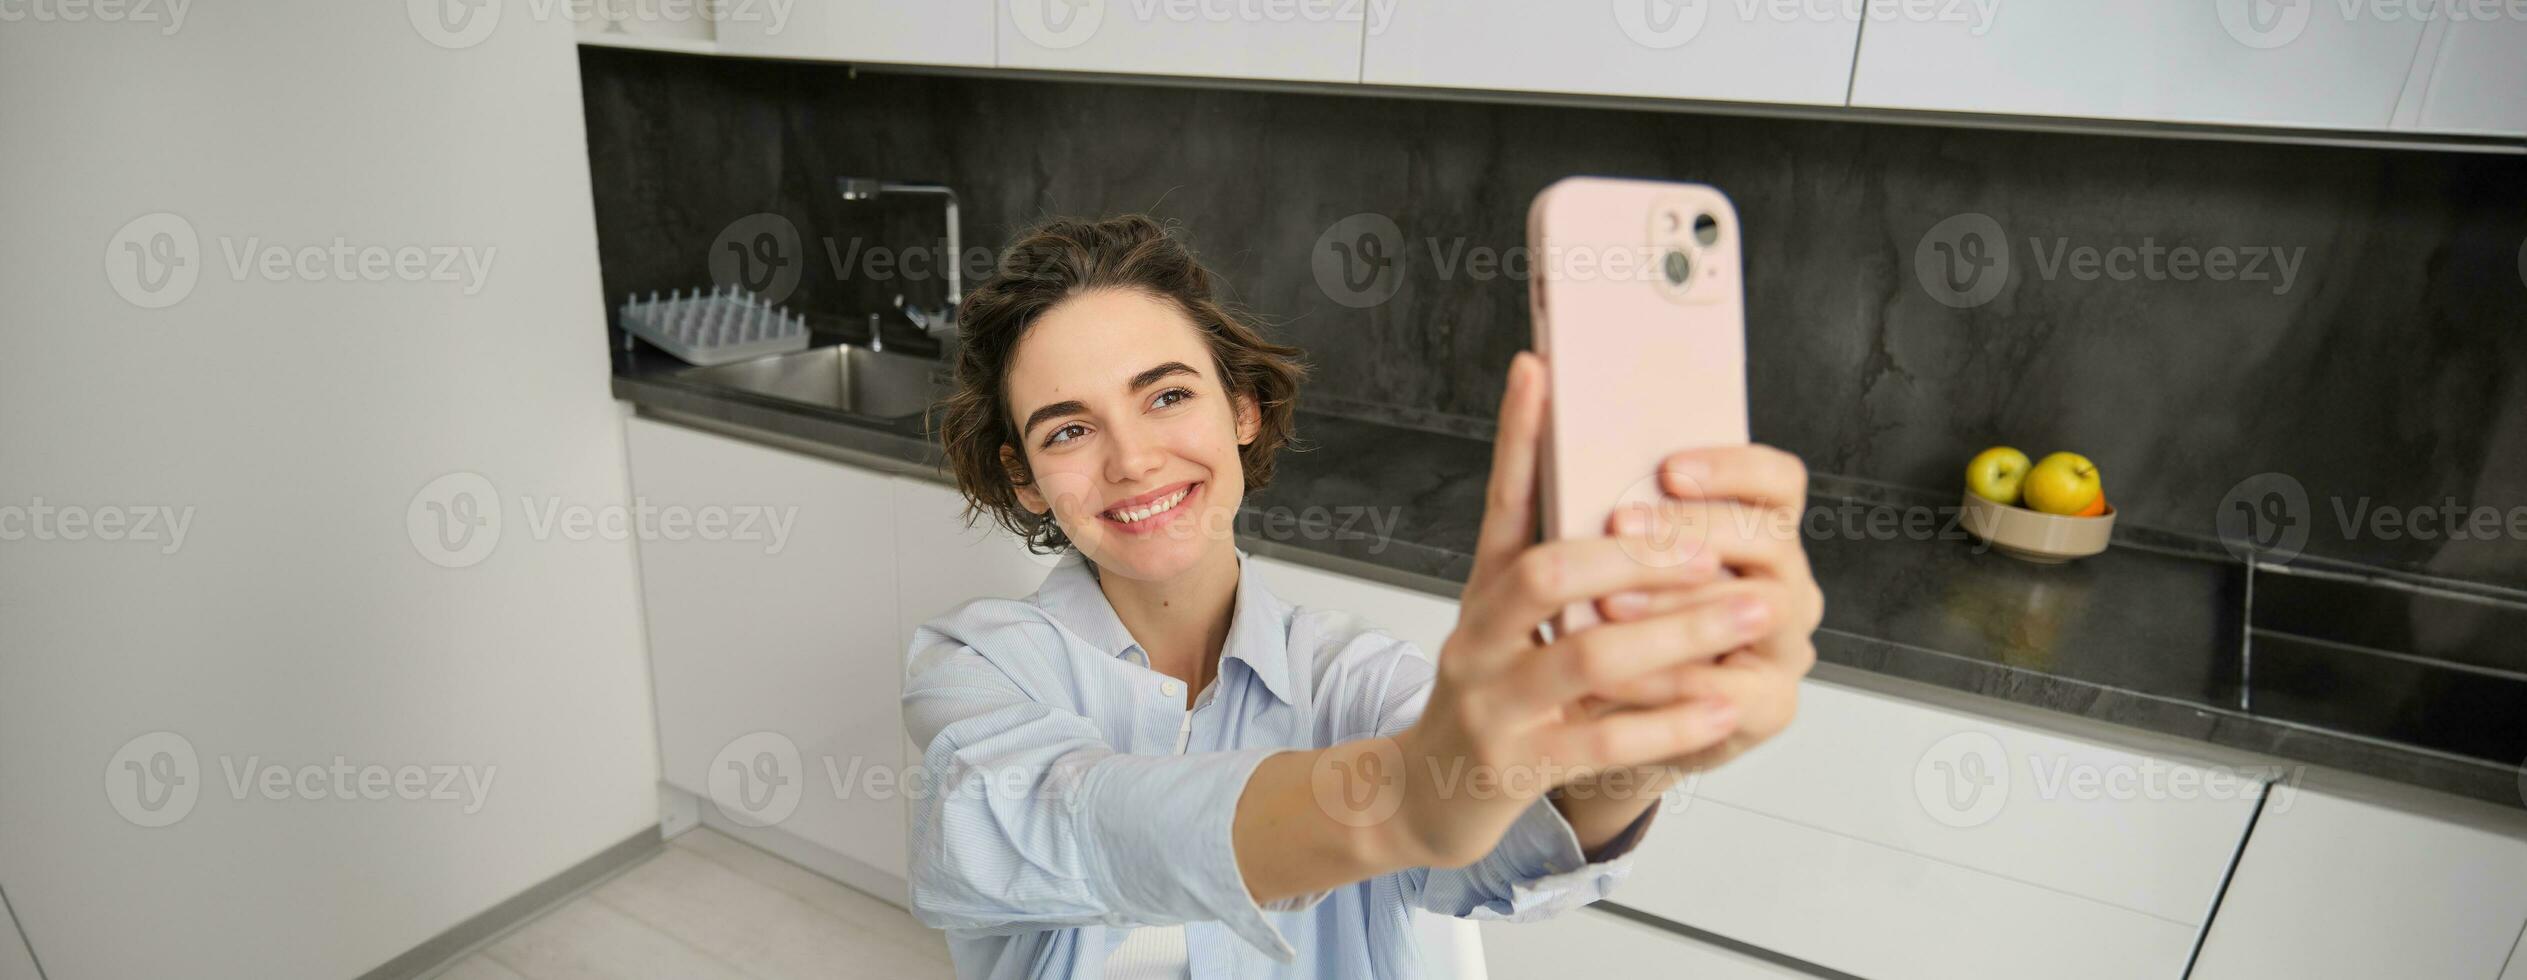 eleganta leende flicka tar selfie på smartphone på Hem, gör Foto av själv i kök, poser för bild med mobil telefon